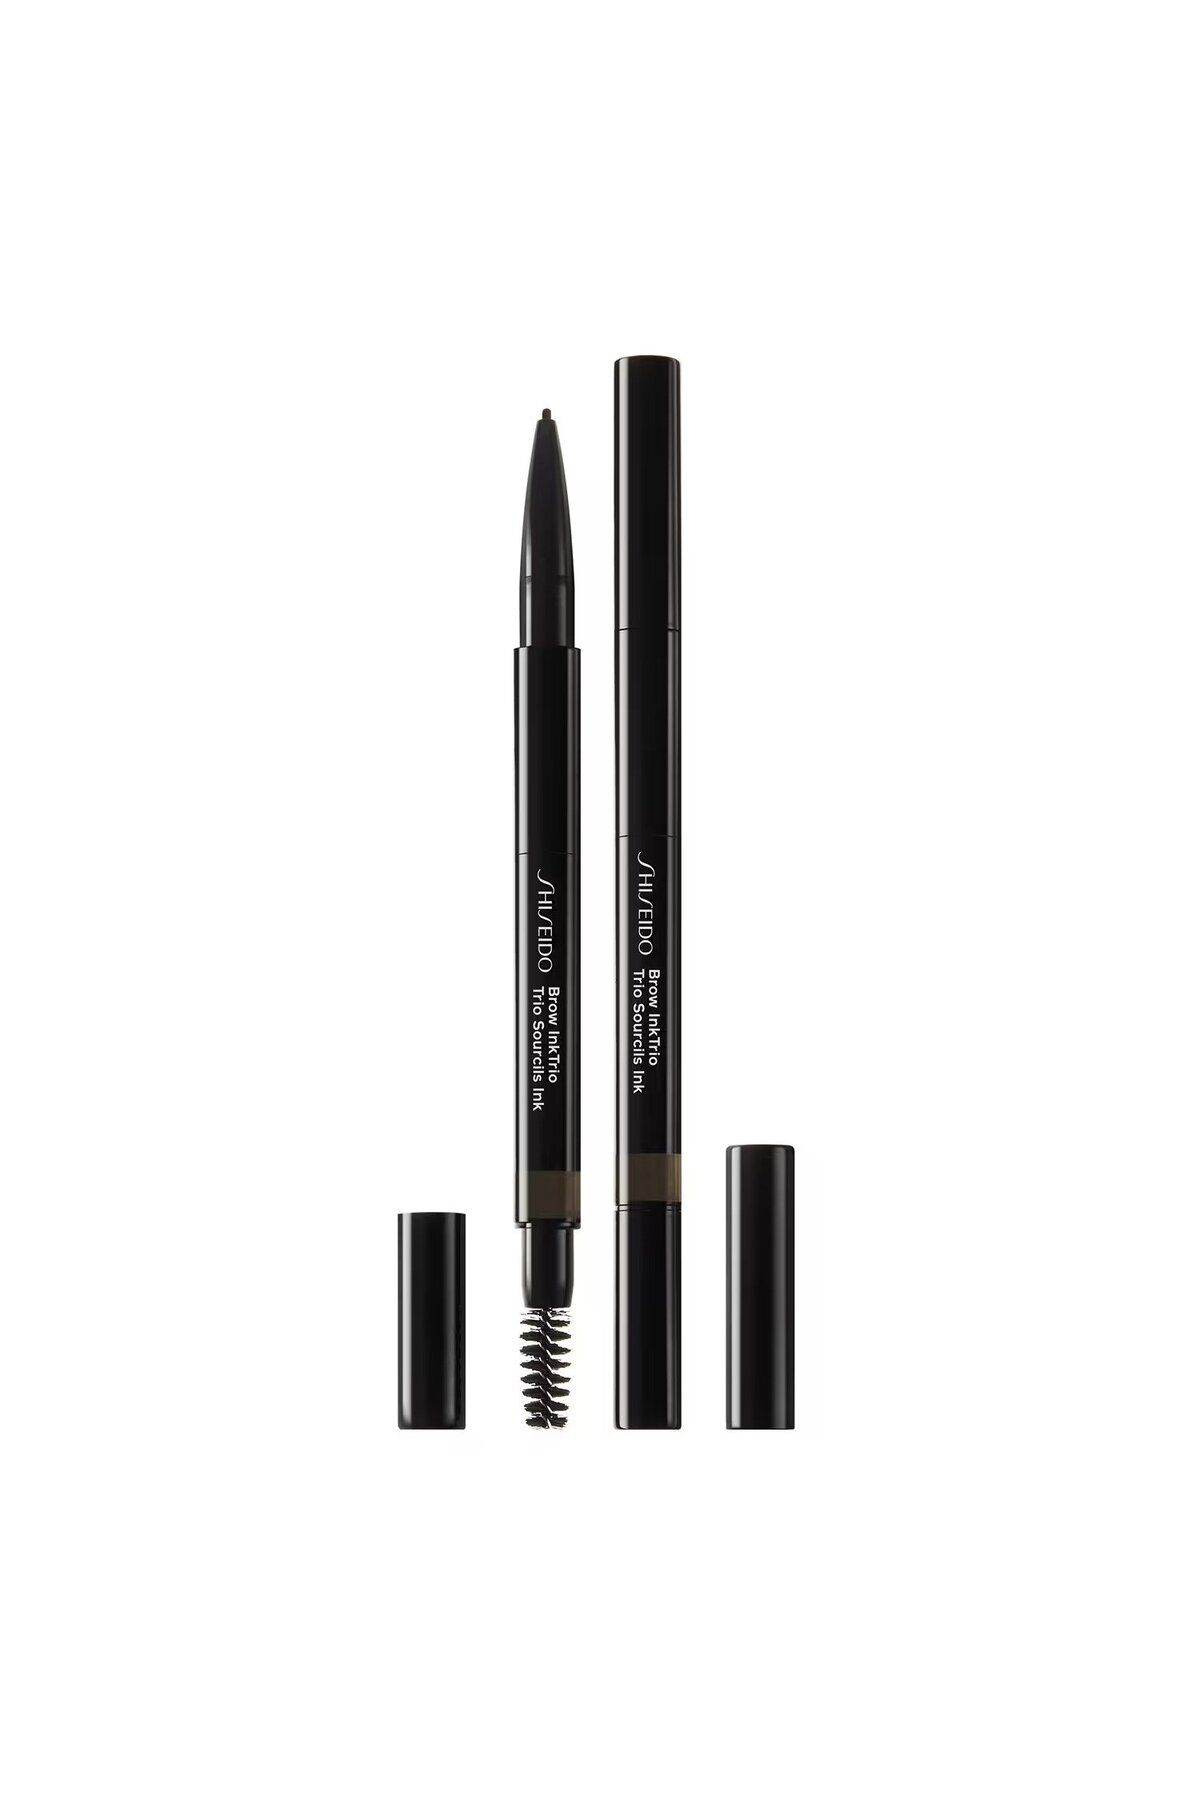 Shiseido Brow InkTrio 04 - Kaşları Doldurmak, Şekillendirmek İçin Tasarlanmış 3'ü Bir Arada Kaş Kalemi 0,6 gr